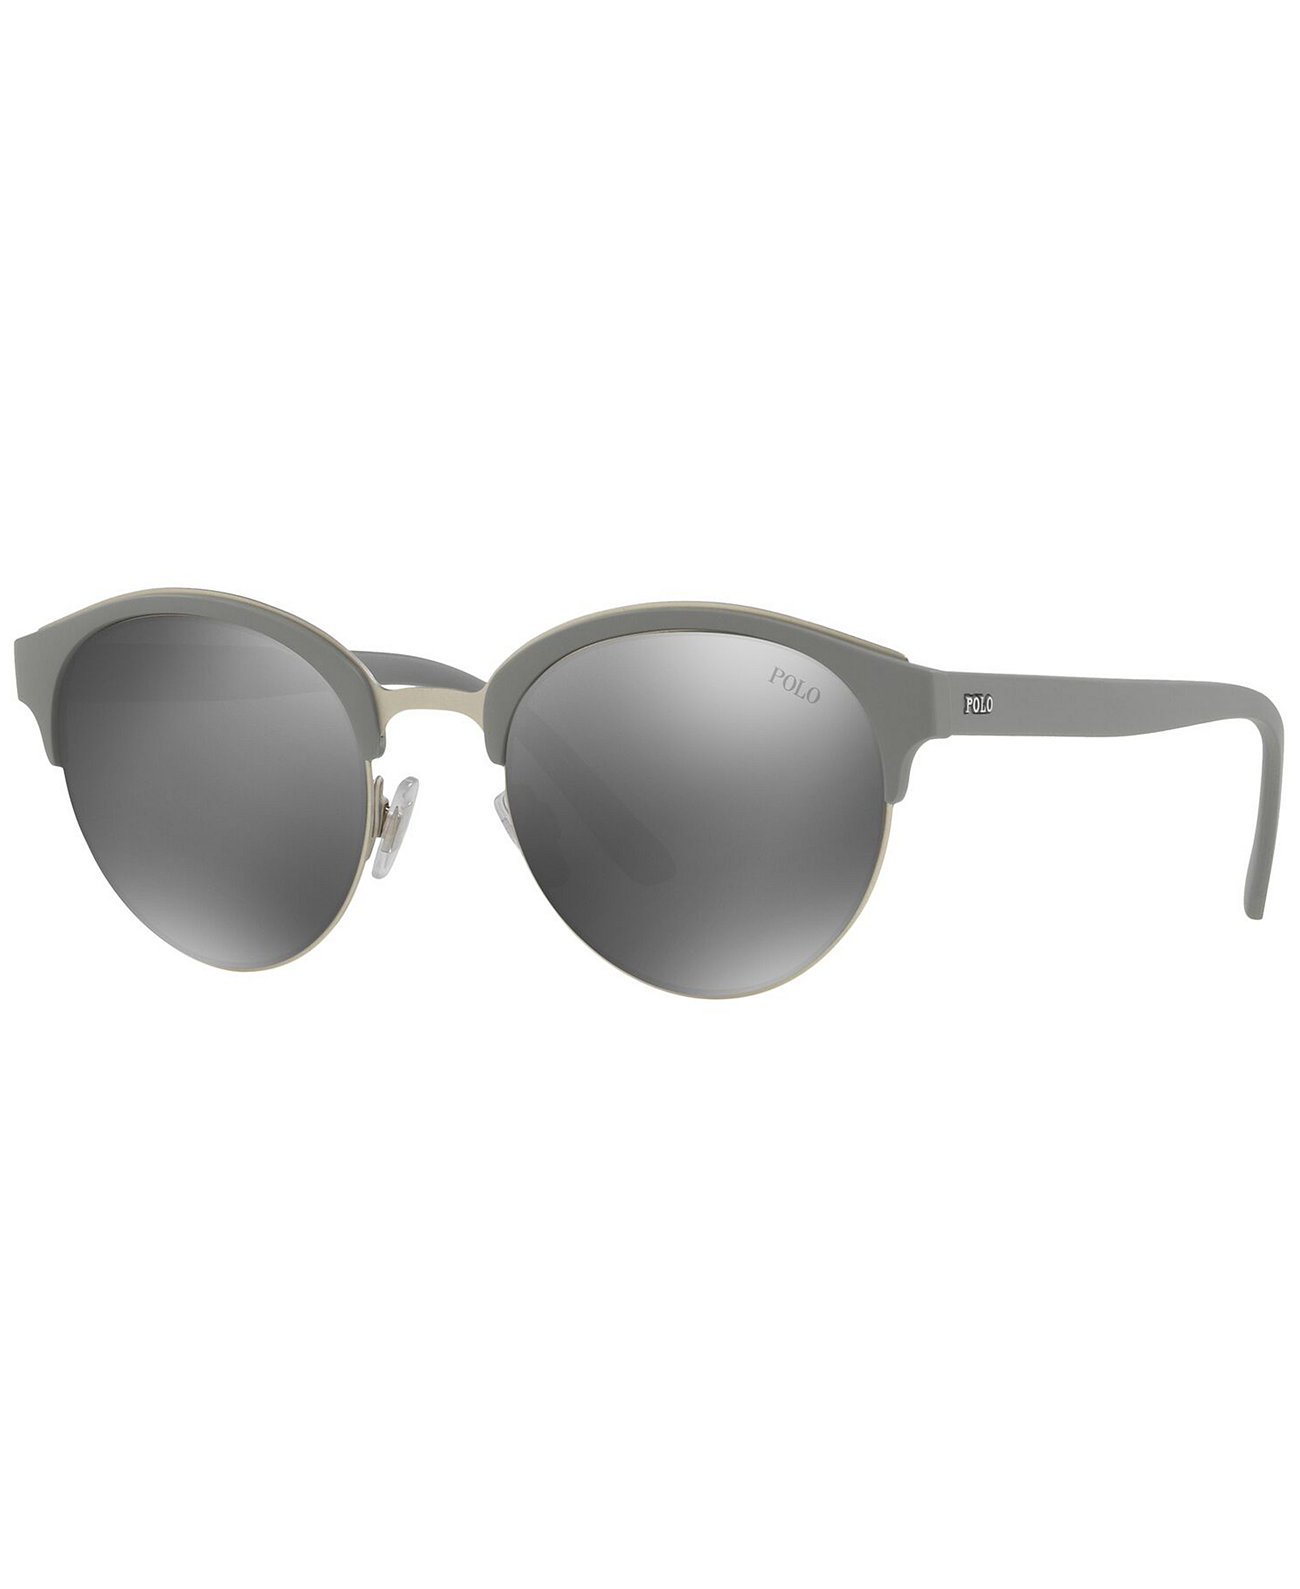 Мужские солнцезащитные очки, PH4127 51 Ralph Lauren